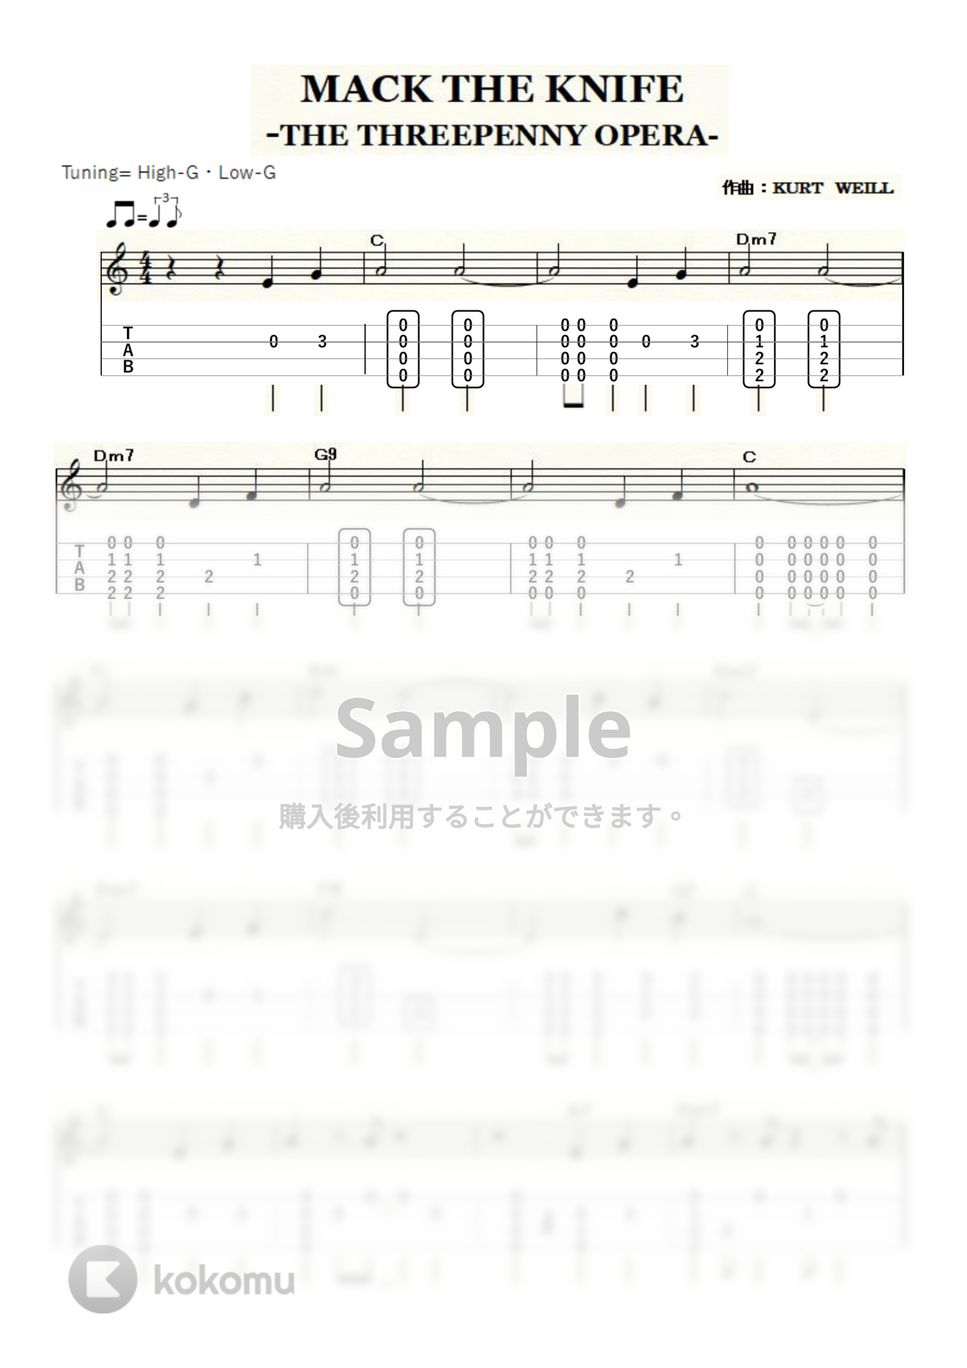 ルイ・アームストロング - Mack the Knife (ｳｸﾚﾚｿﾛ / High-G・Low-G / 中級) by ukulelepapa